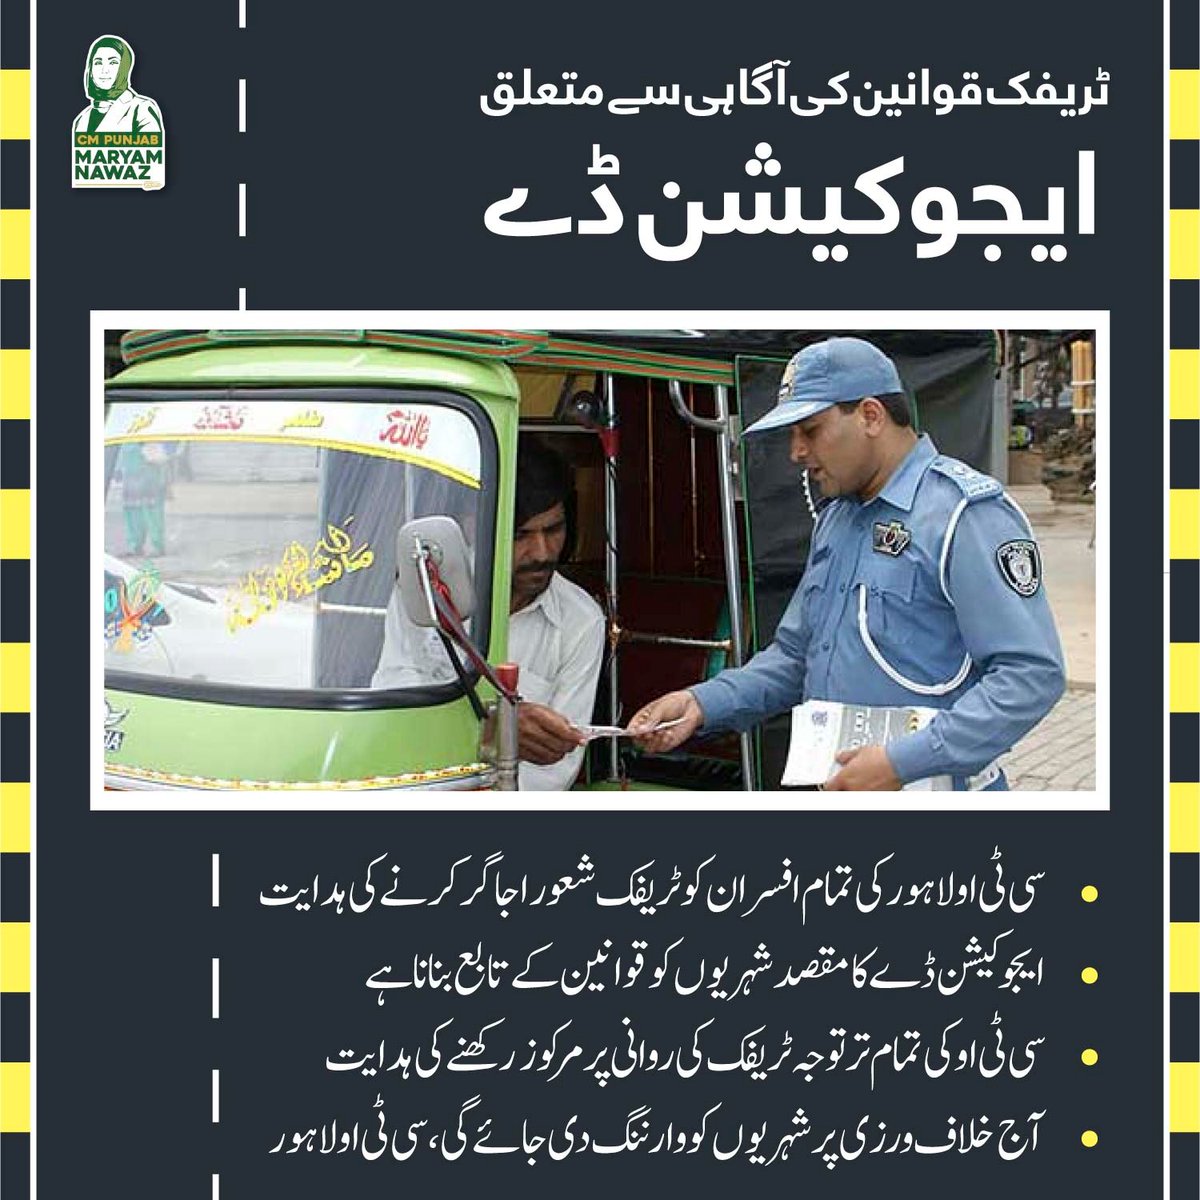 ٹریفک قوانین کی آگاہی سے متعلق ایجوکیشن ڈے Wall Done CM Punjab @MaryamNSharif